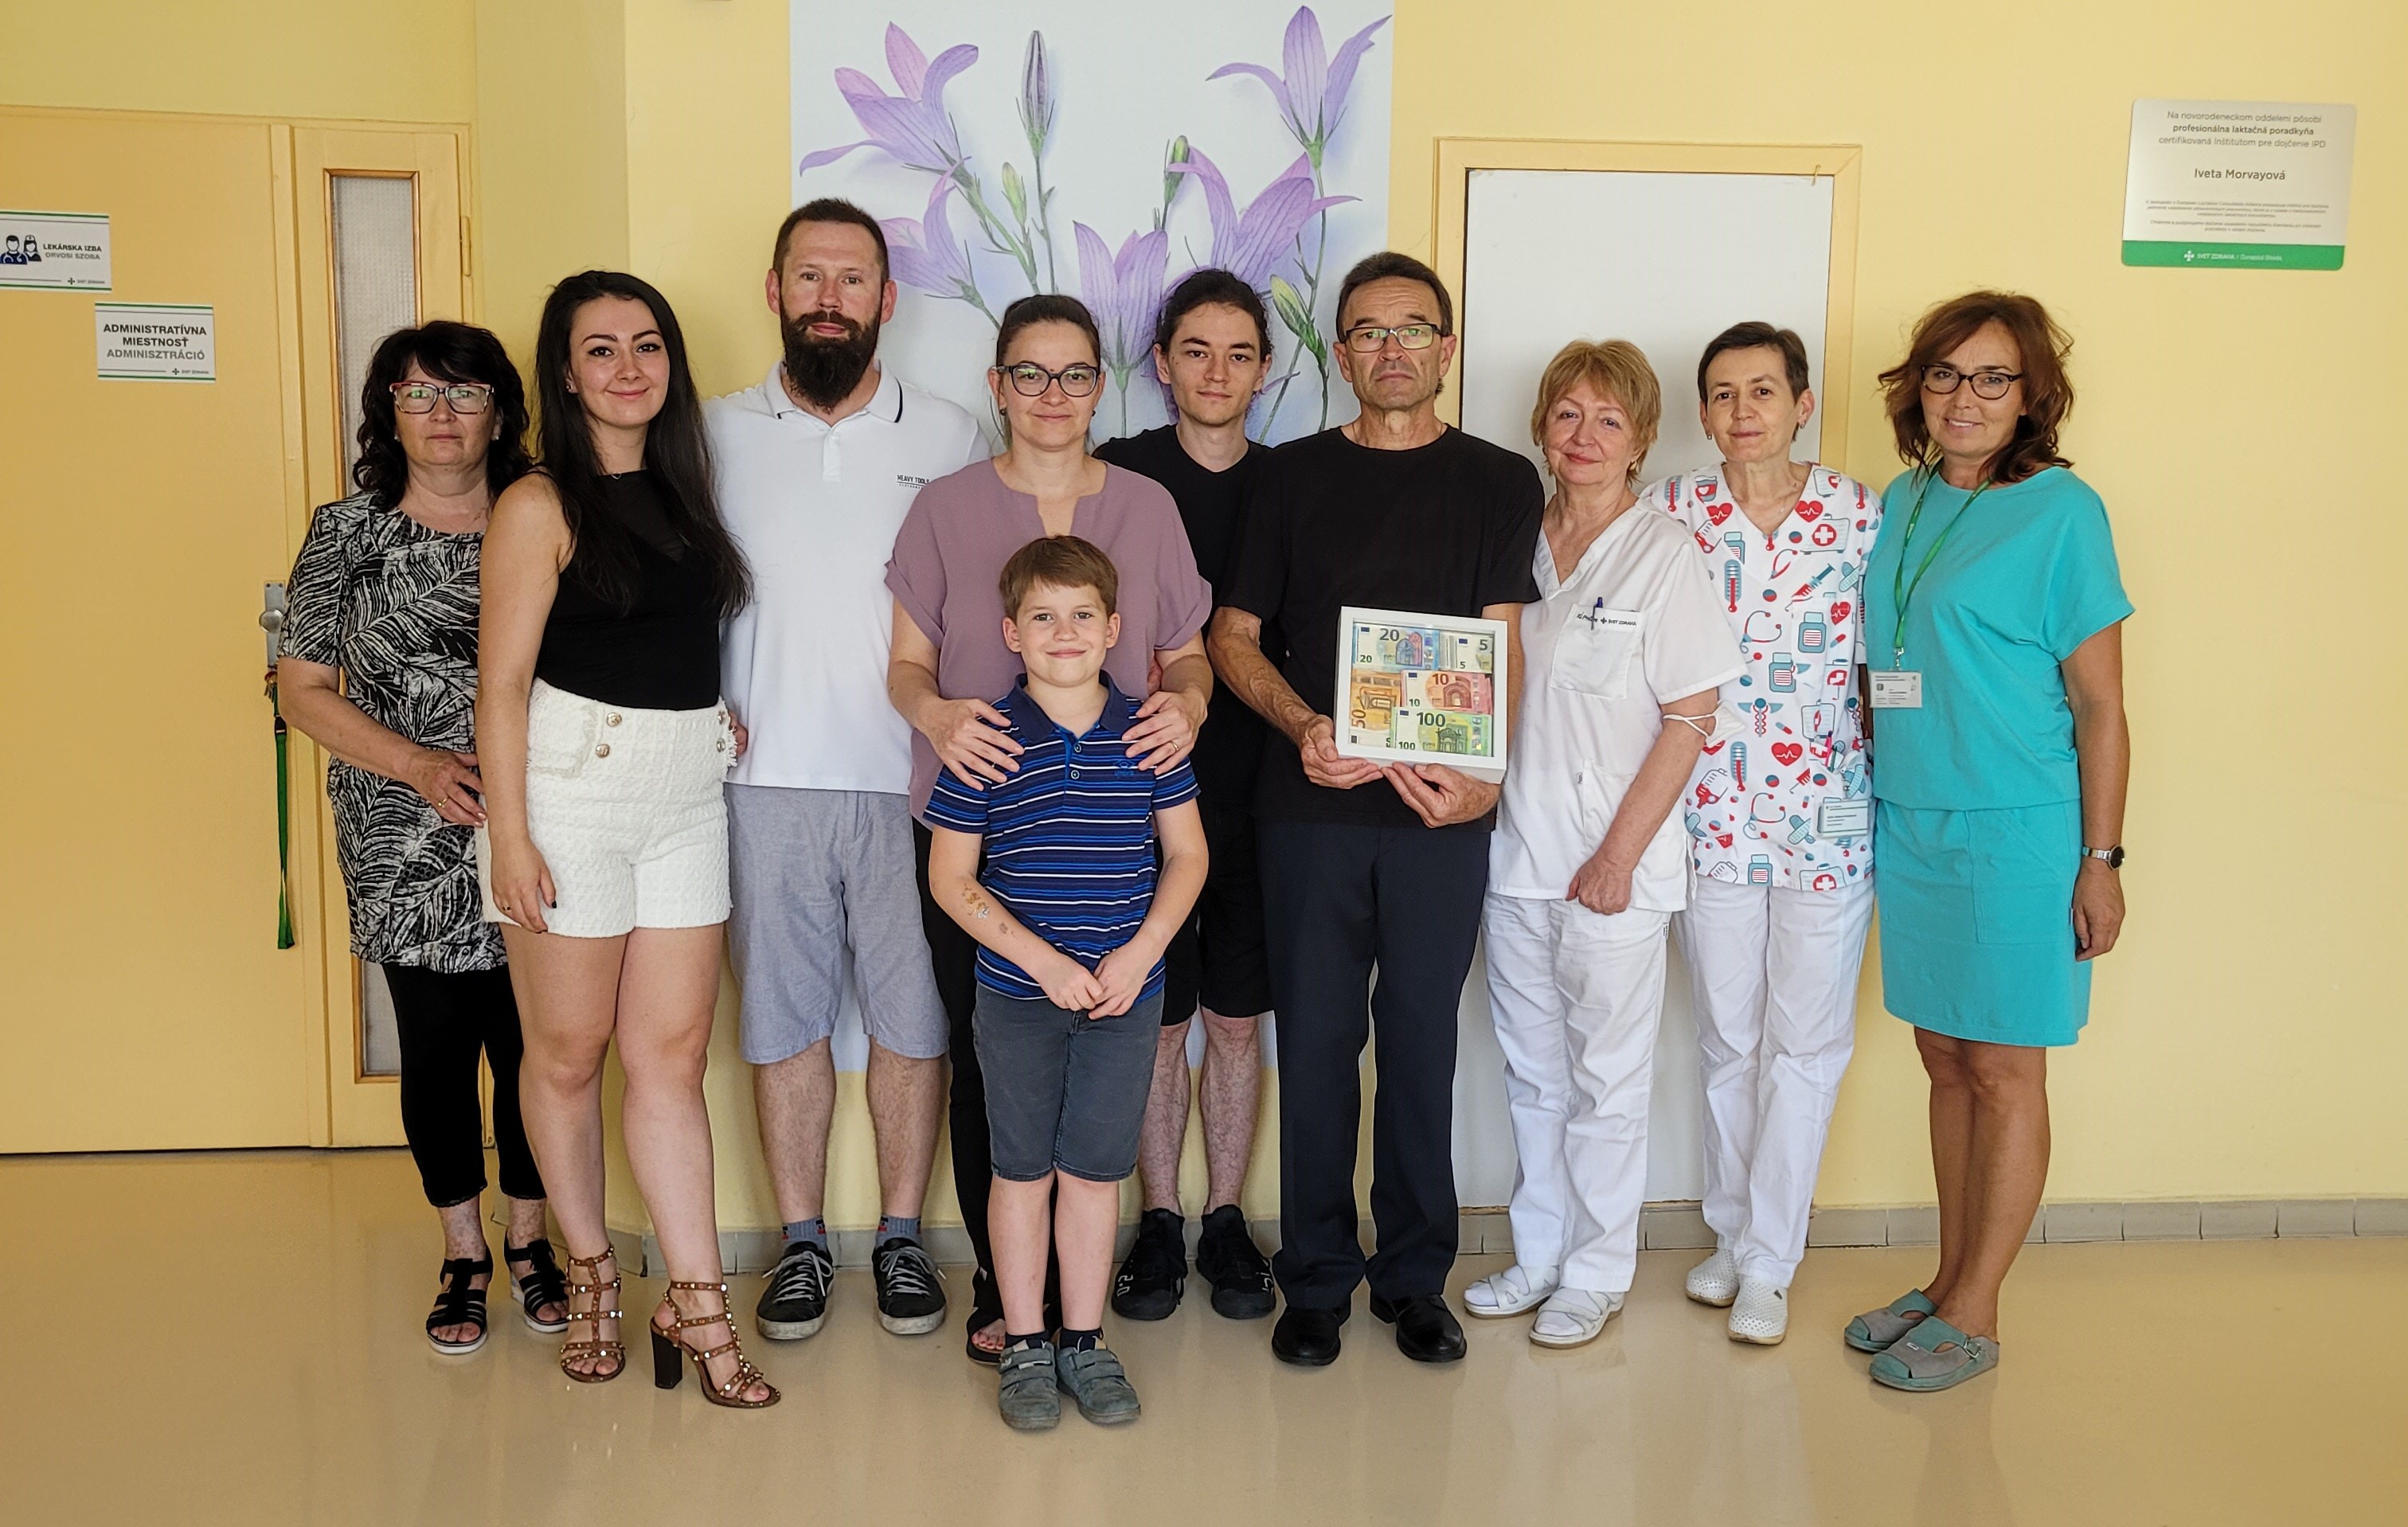 A gyászoló család átadta az összegyűjtött pénzösszeget a dunaszerdahelyi kórház újszülött osztályának (fotó: a Dunaszerdahelyi Kórház képarchívuma)